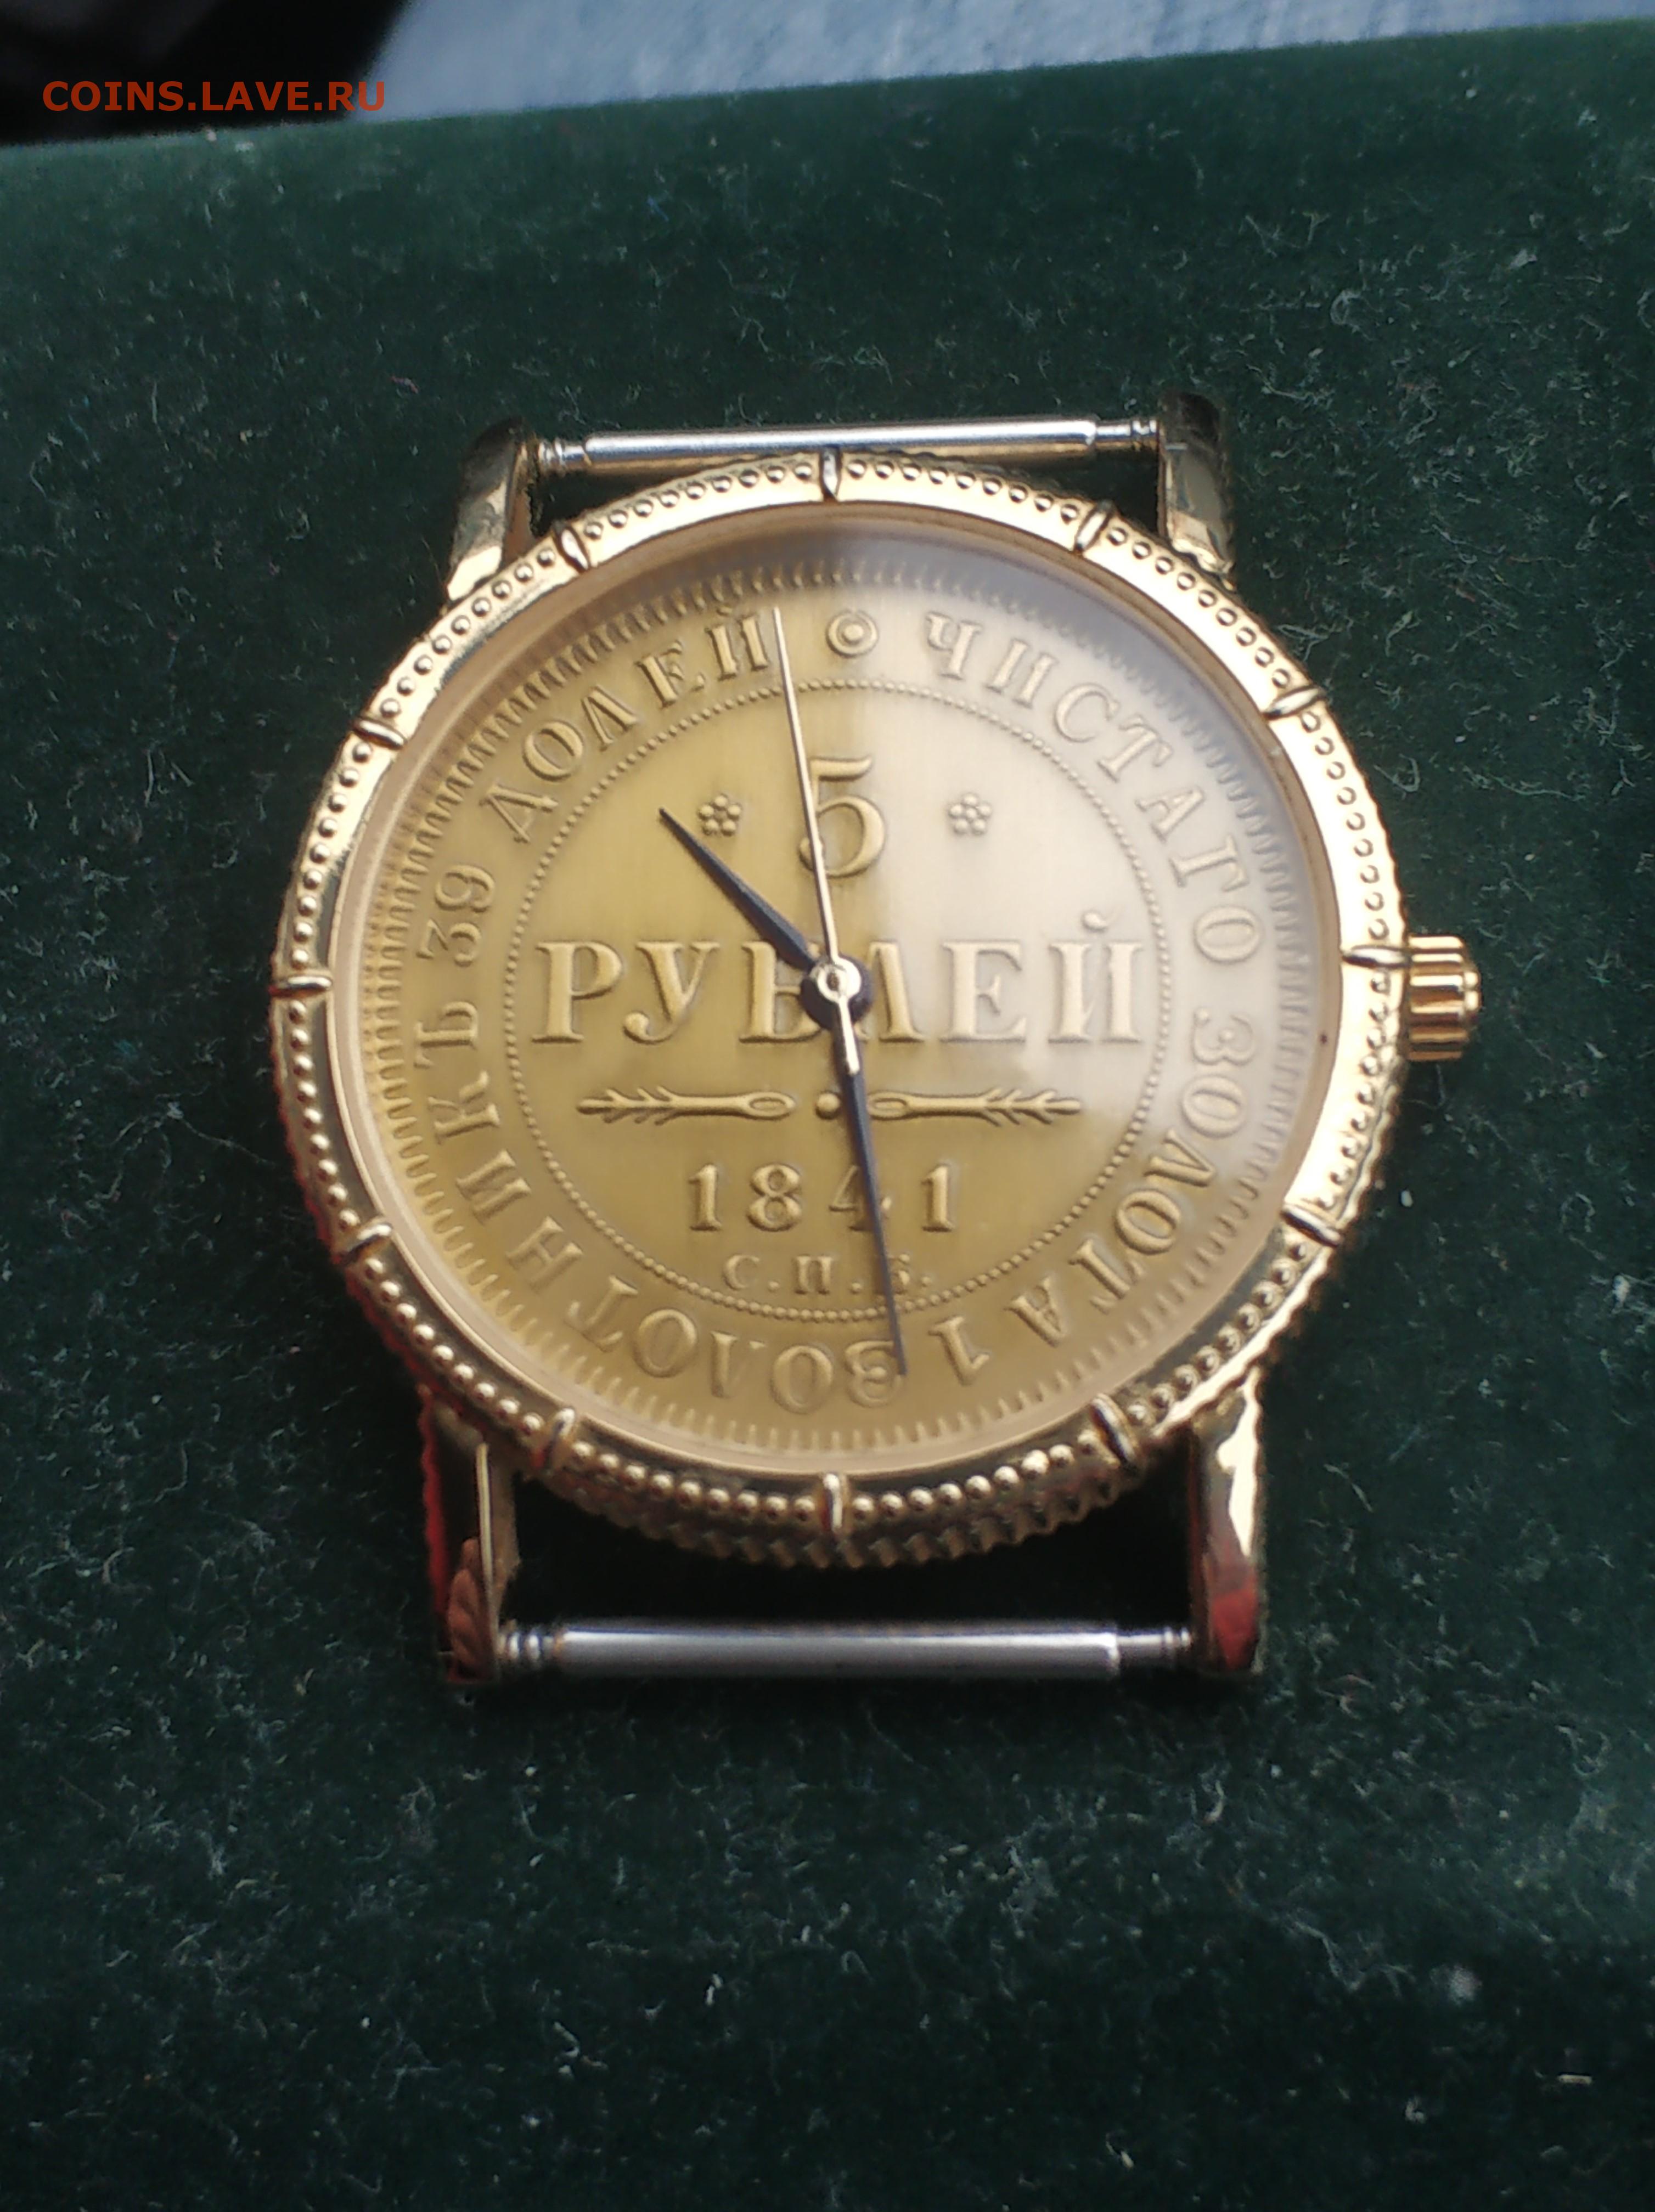 Юбилейные часы сбербанка. Часы от Сбербанка наручные. Подарочные часы Сбербанк. Часы юбилейные Сбербанк. Часы юбилейные Сбербанк 1841 год.